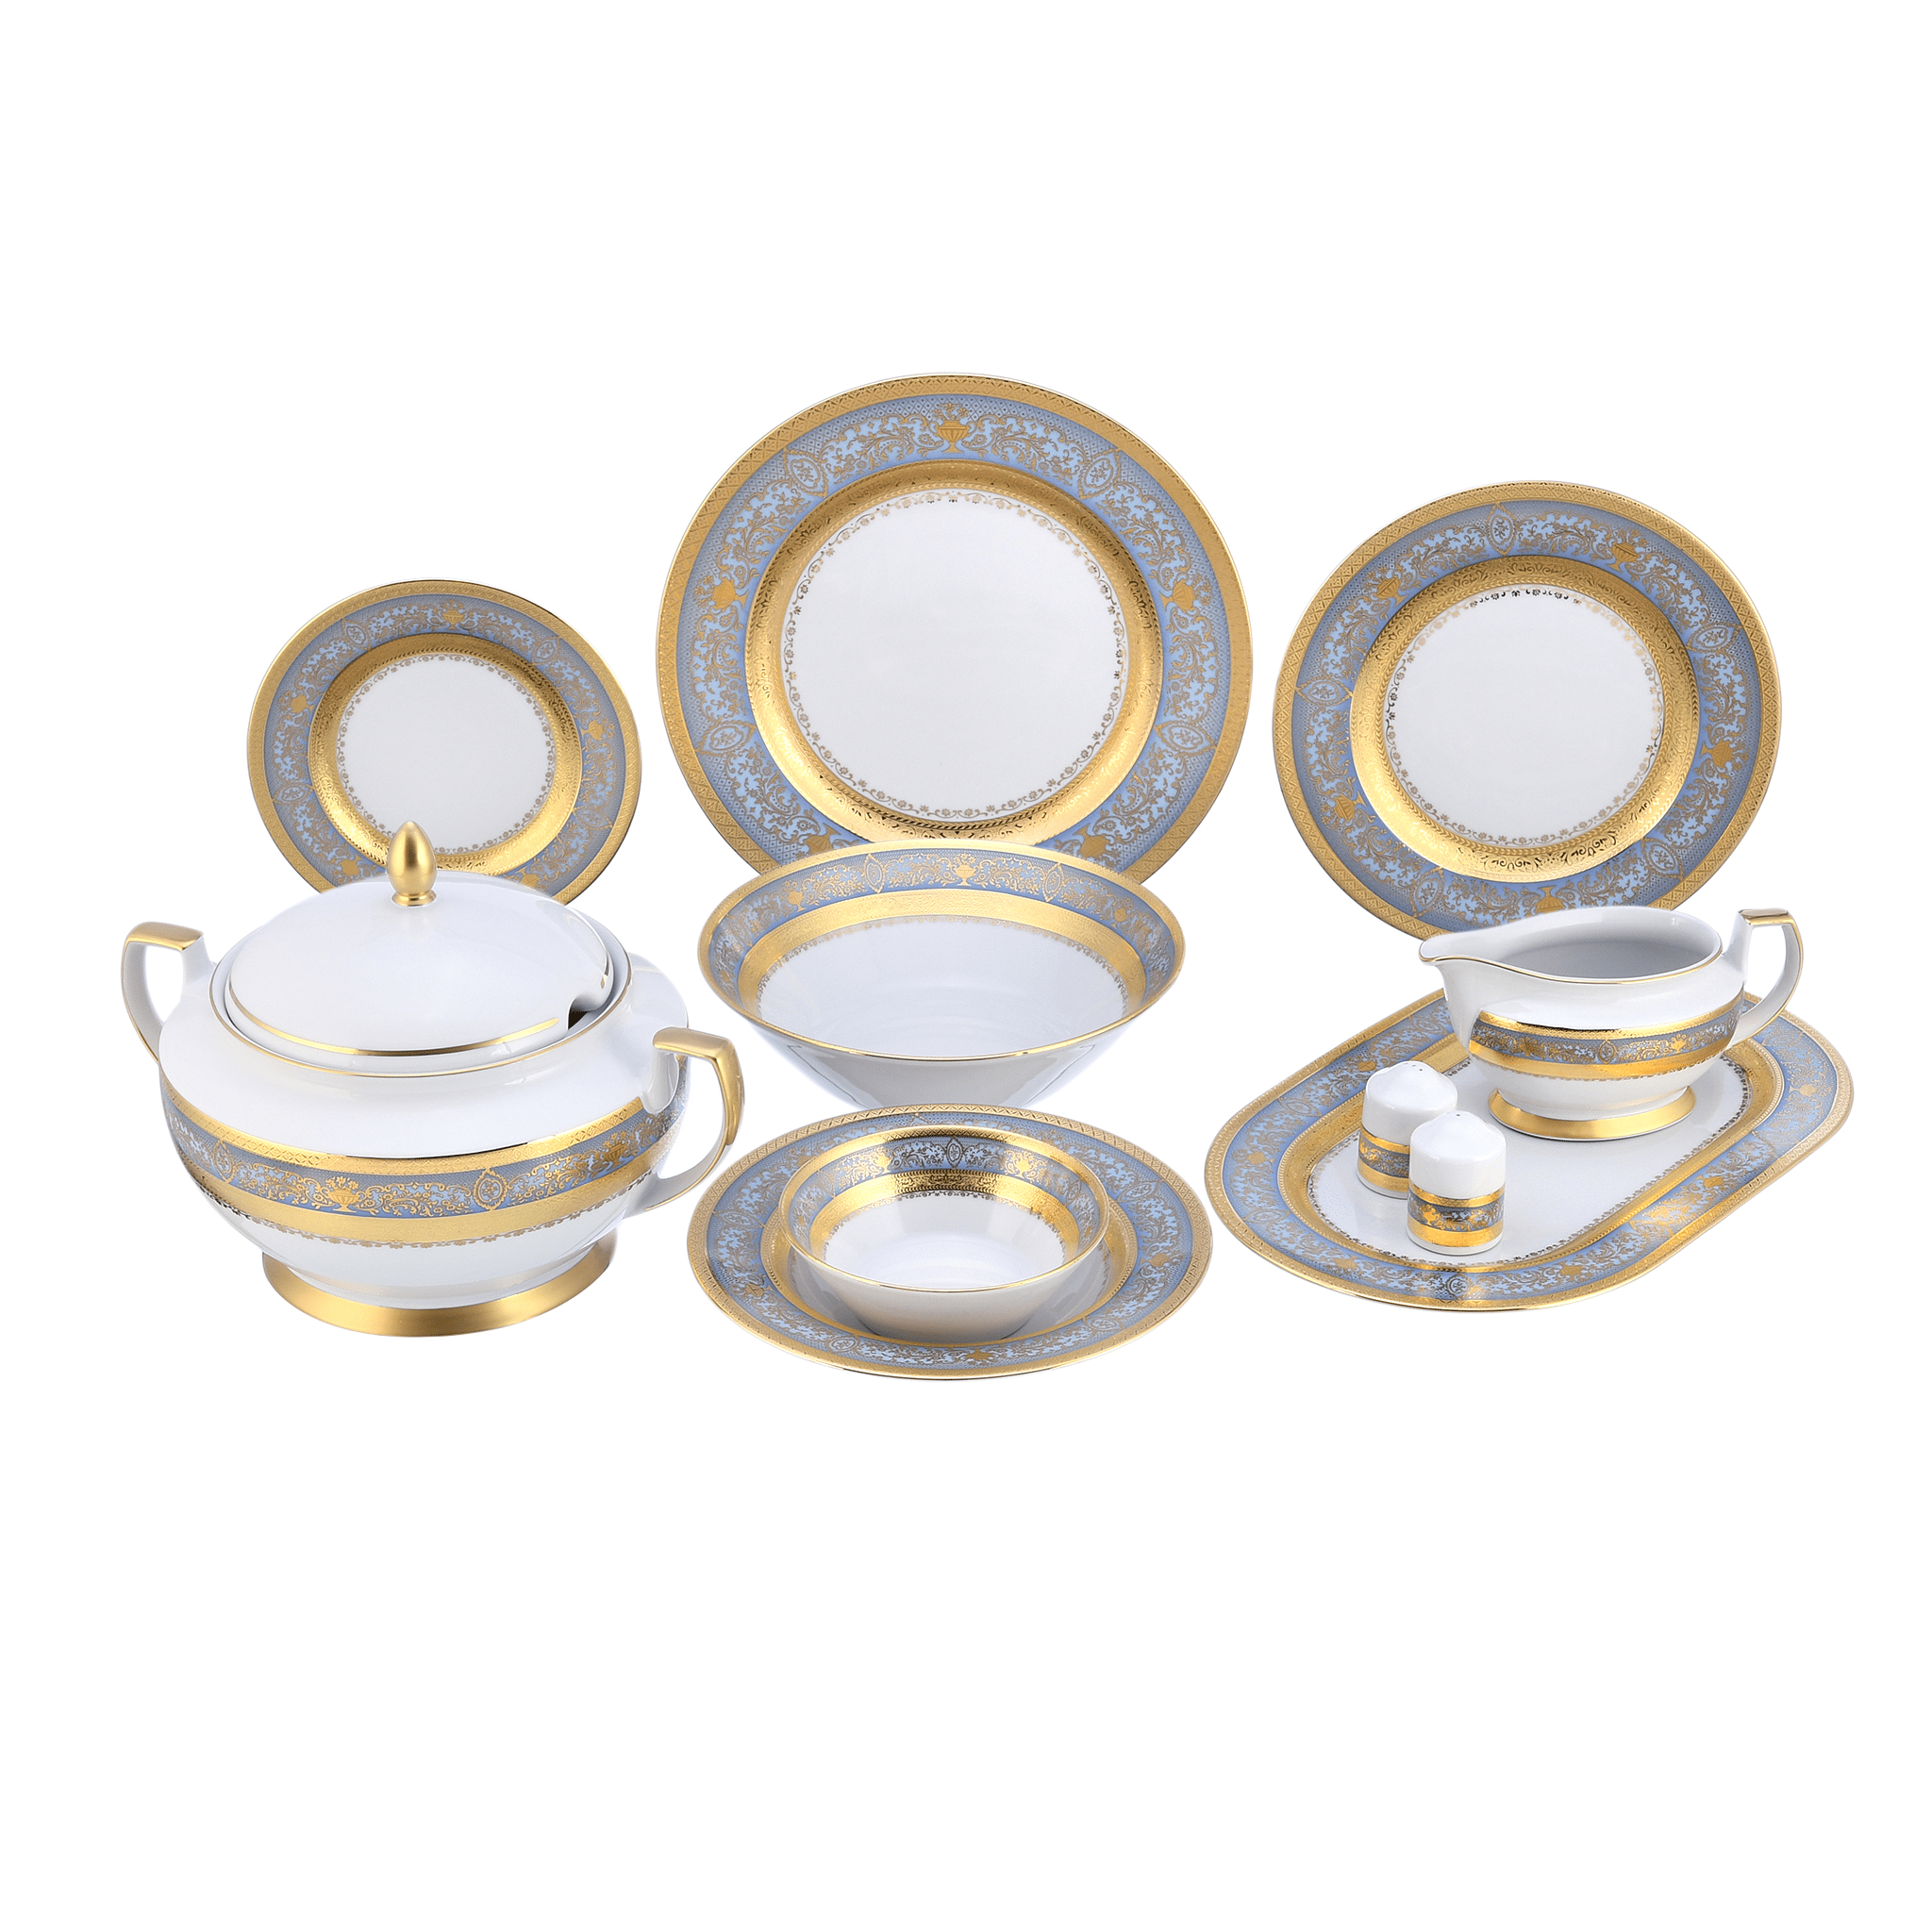 Falkenporzellan - Dinner Set 59 Pieces - Blue & Gold - Porcelain - 1300015